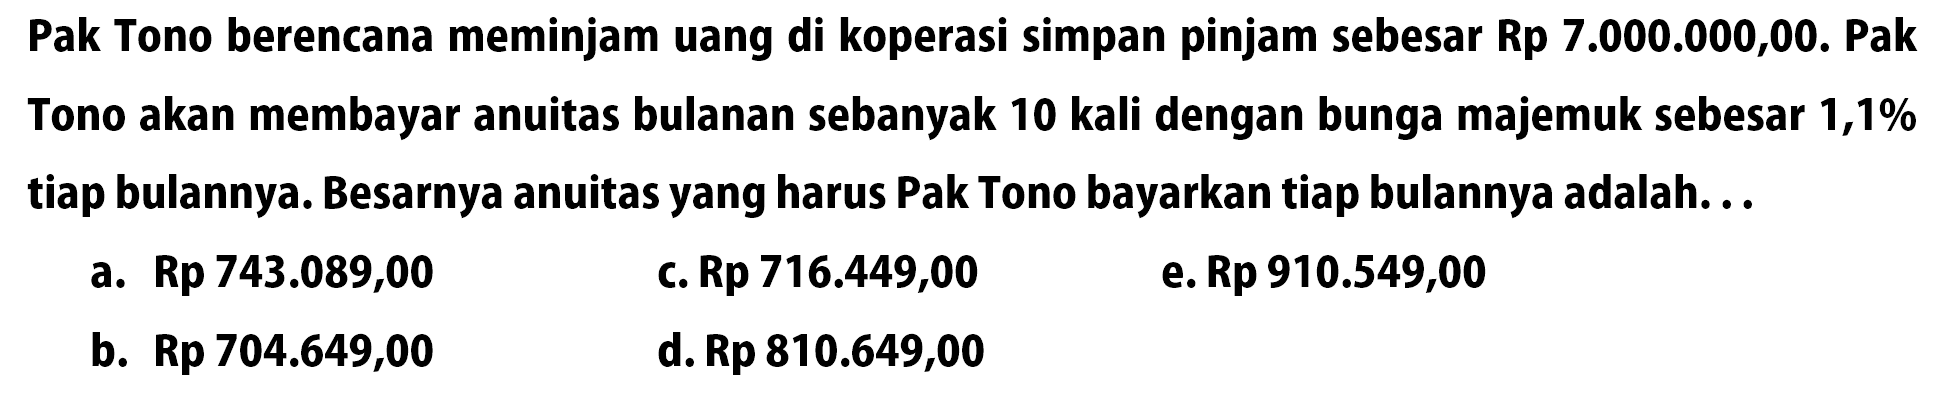 Pak Tono berencana meminjam uang di koperasi simpan pinjam sebesar Rp7.000.000,00. Pak Tono akan membayar anuitas bulanan sebanyak 10 kali dengan bunga majemuk sebesar 1,1% tiap bulannya. Besarnya anuitas yang harus Pak Tono bayarkan tiap bulannya adalah. ..